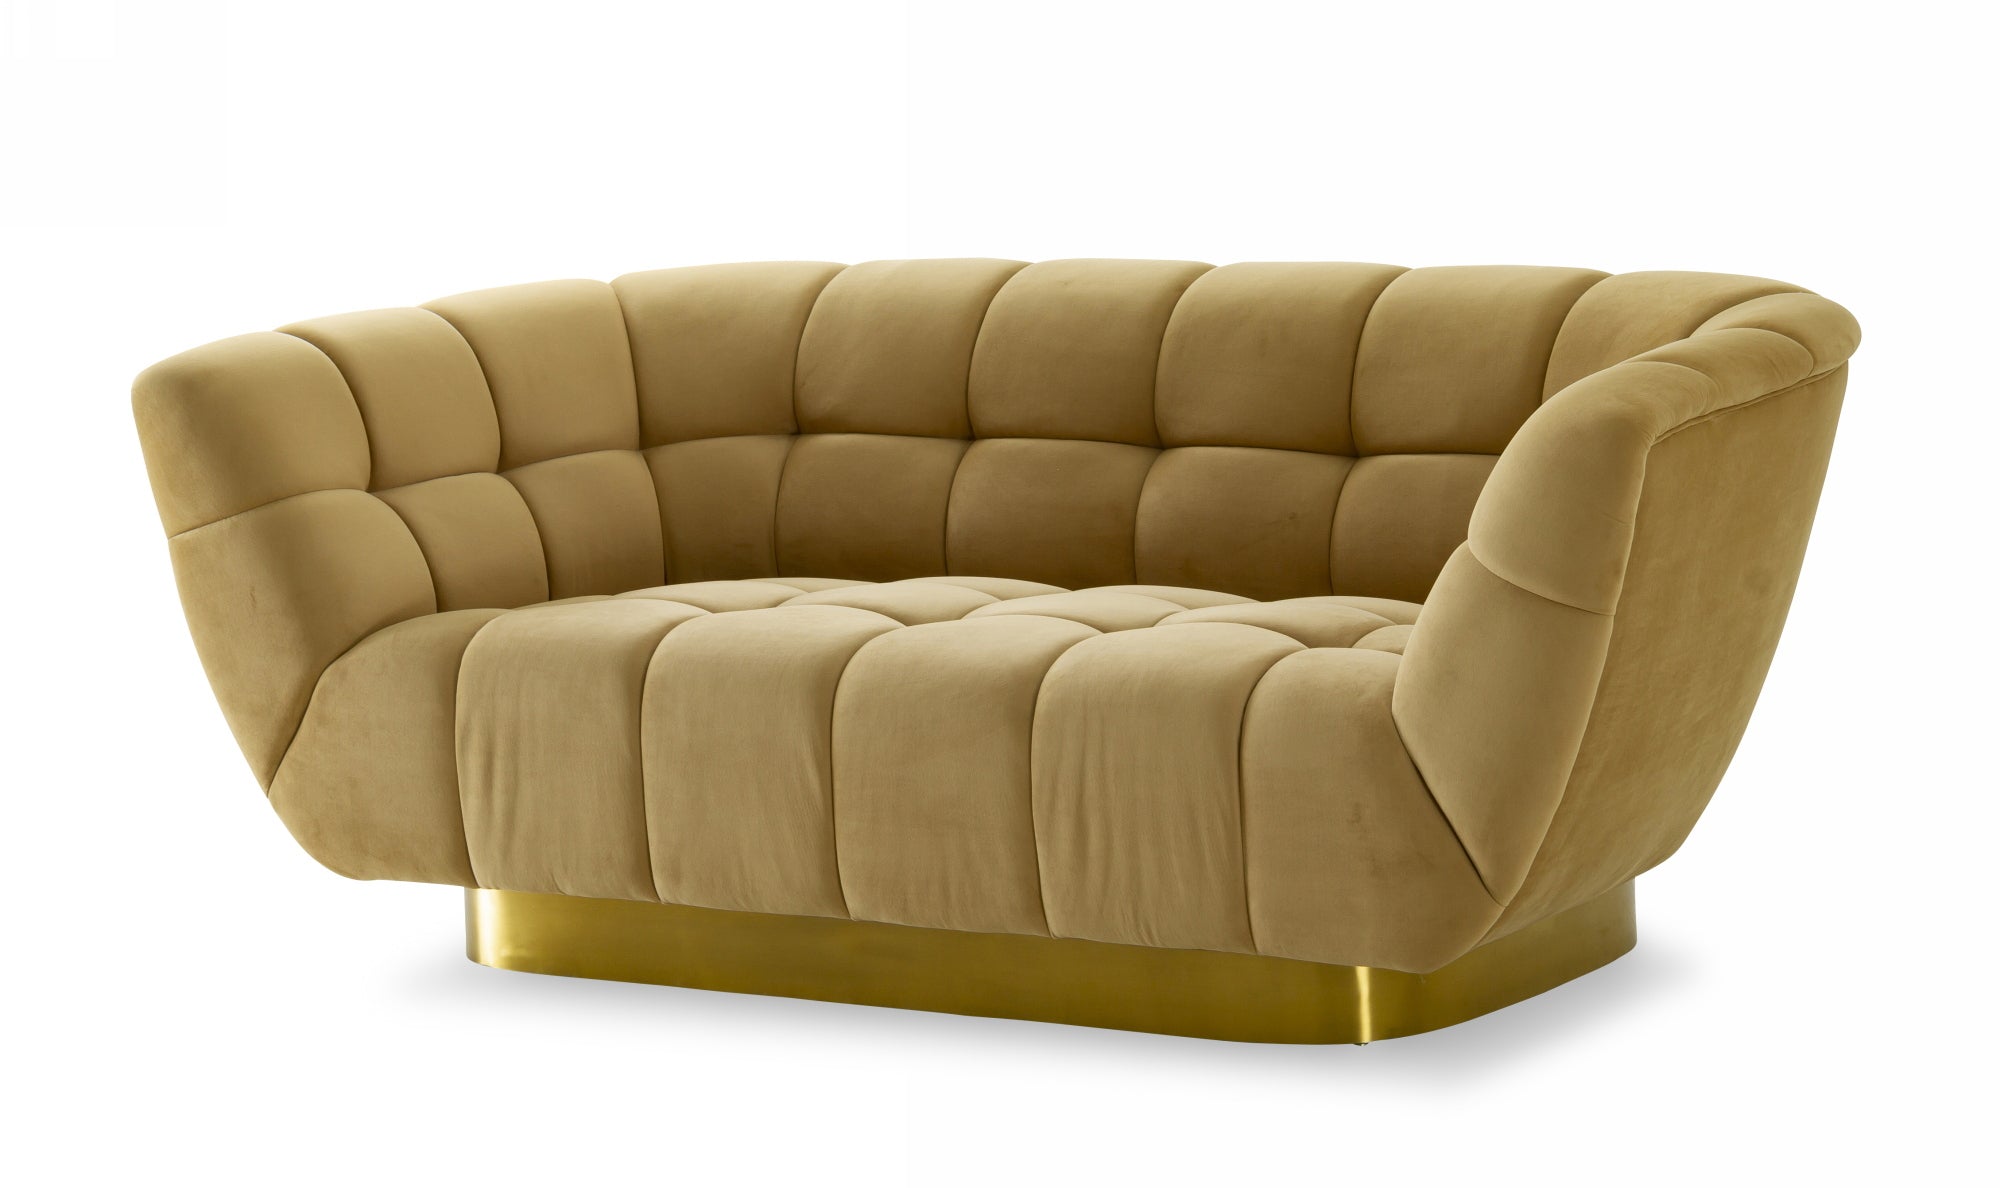 Divani Casa Granby - Glam Mustard and Gold Fabric Loveseat-Sofa-VIG-Wall2Wall Furnishings